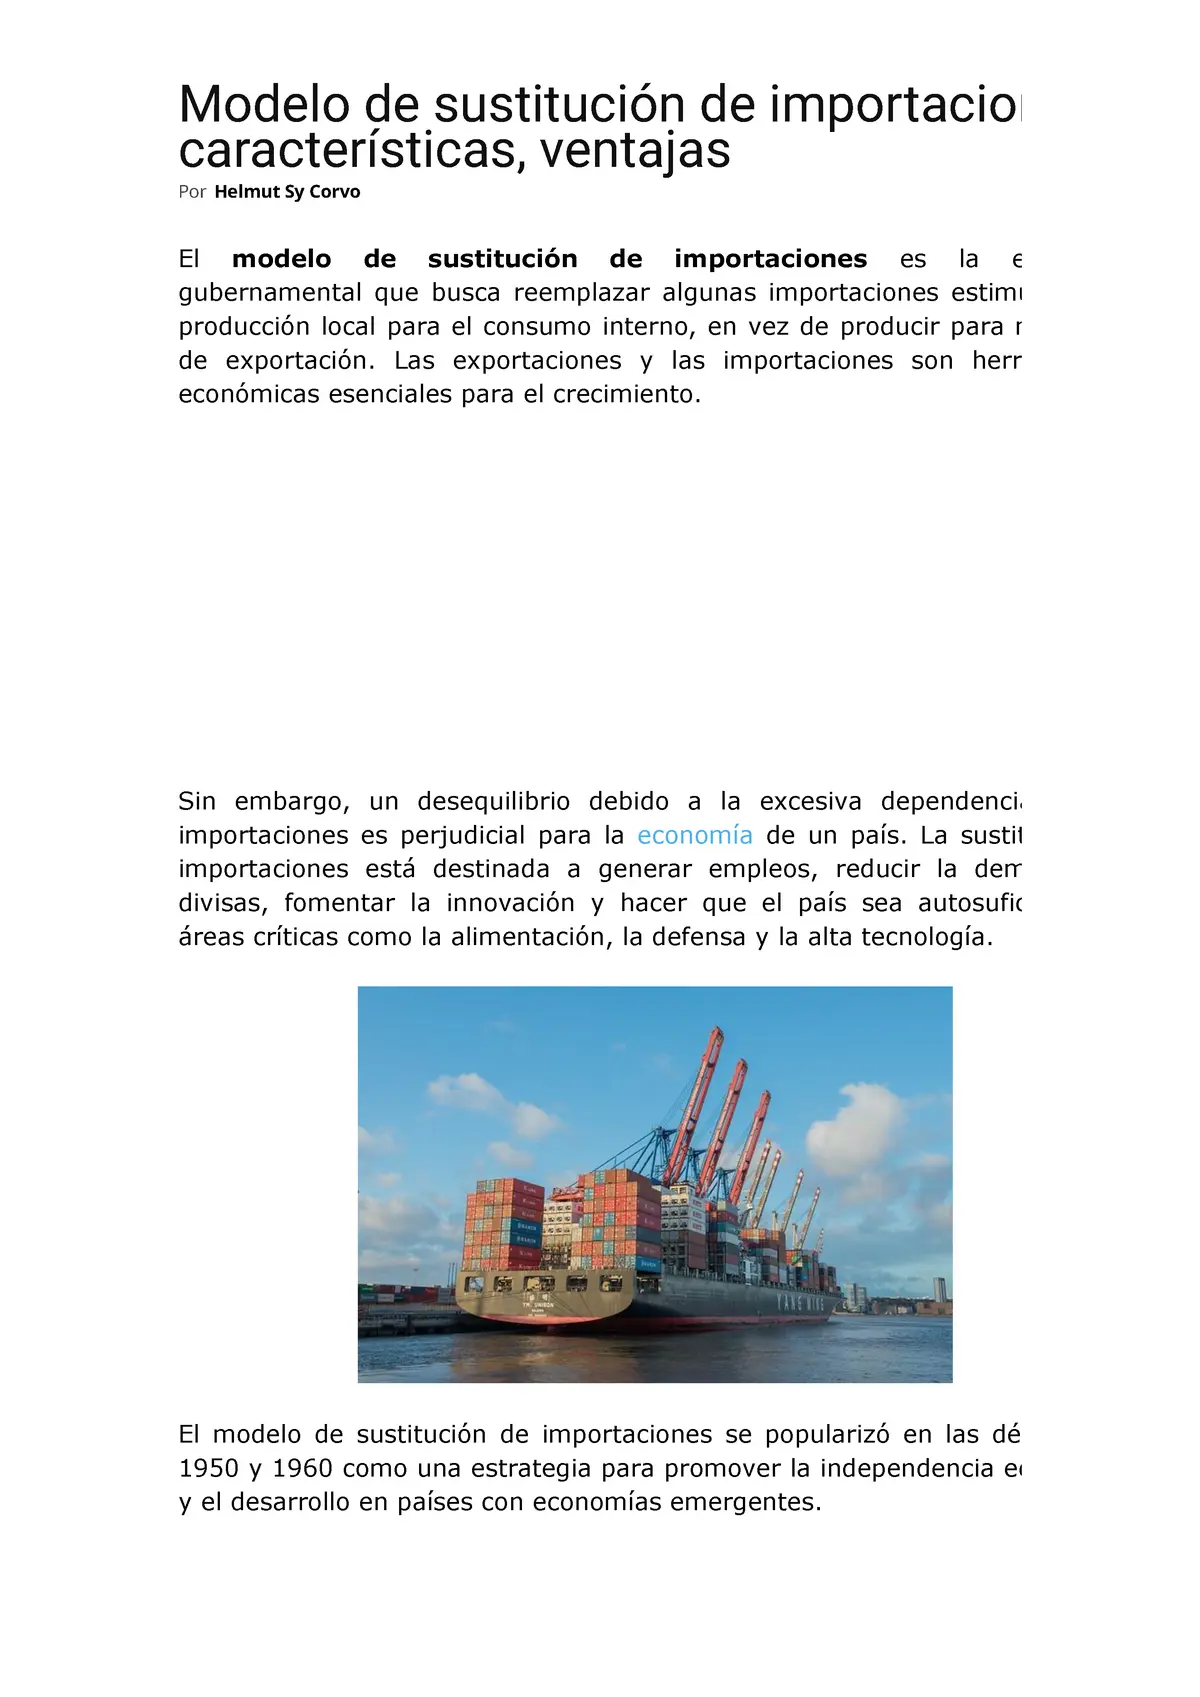 sustitucion de importaciones resumen - Cuáles son las características del modelo de sustitución de importaciones